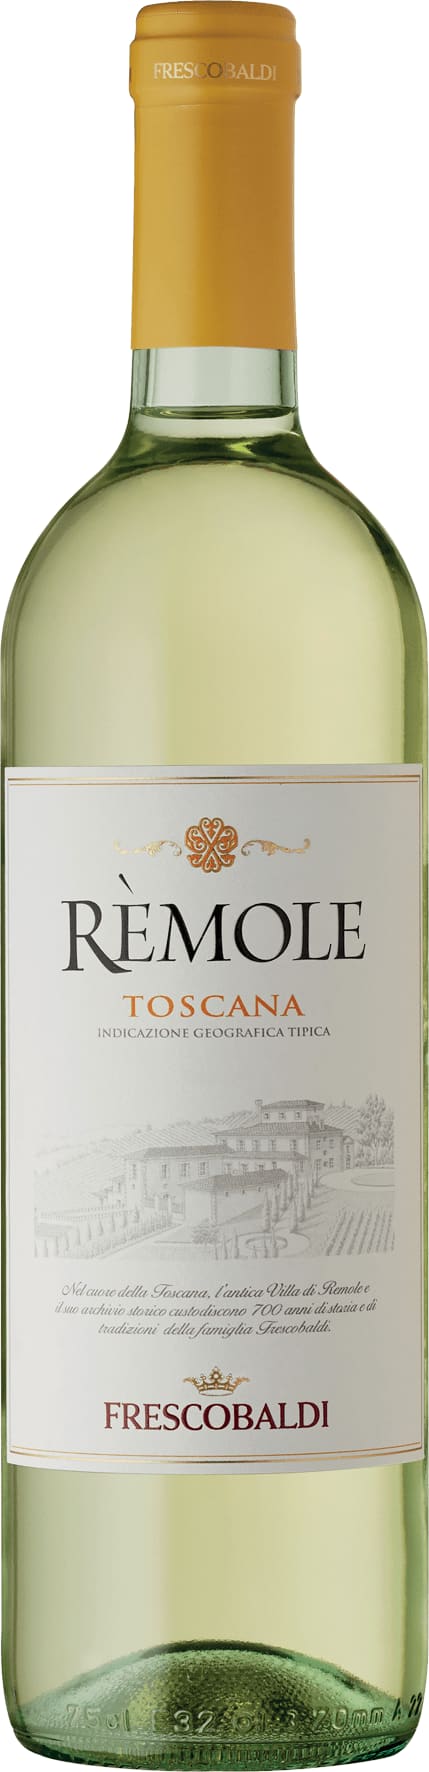 Frescobaldi Remole Bianco 2020 75cl - Buy Frescobaldi Wines from GREAT WINES DIRECT wine shop